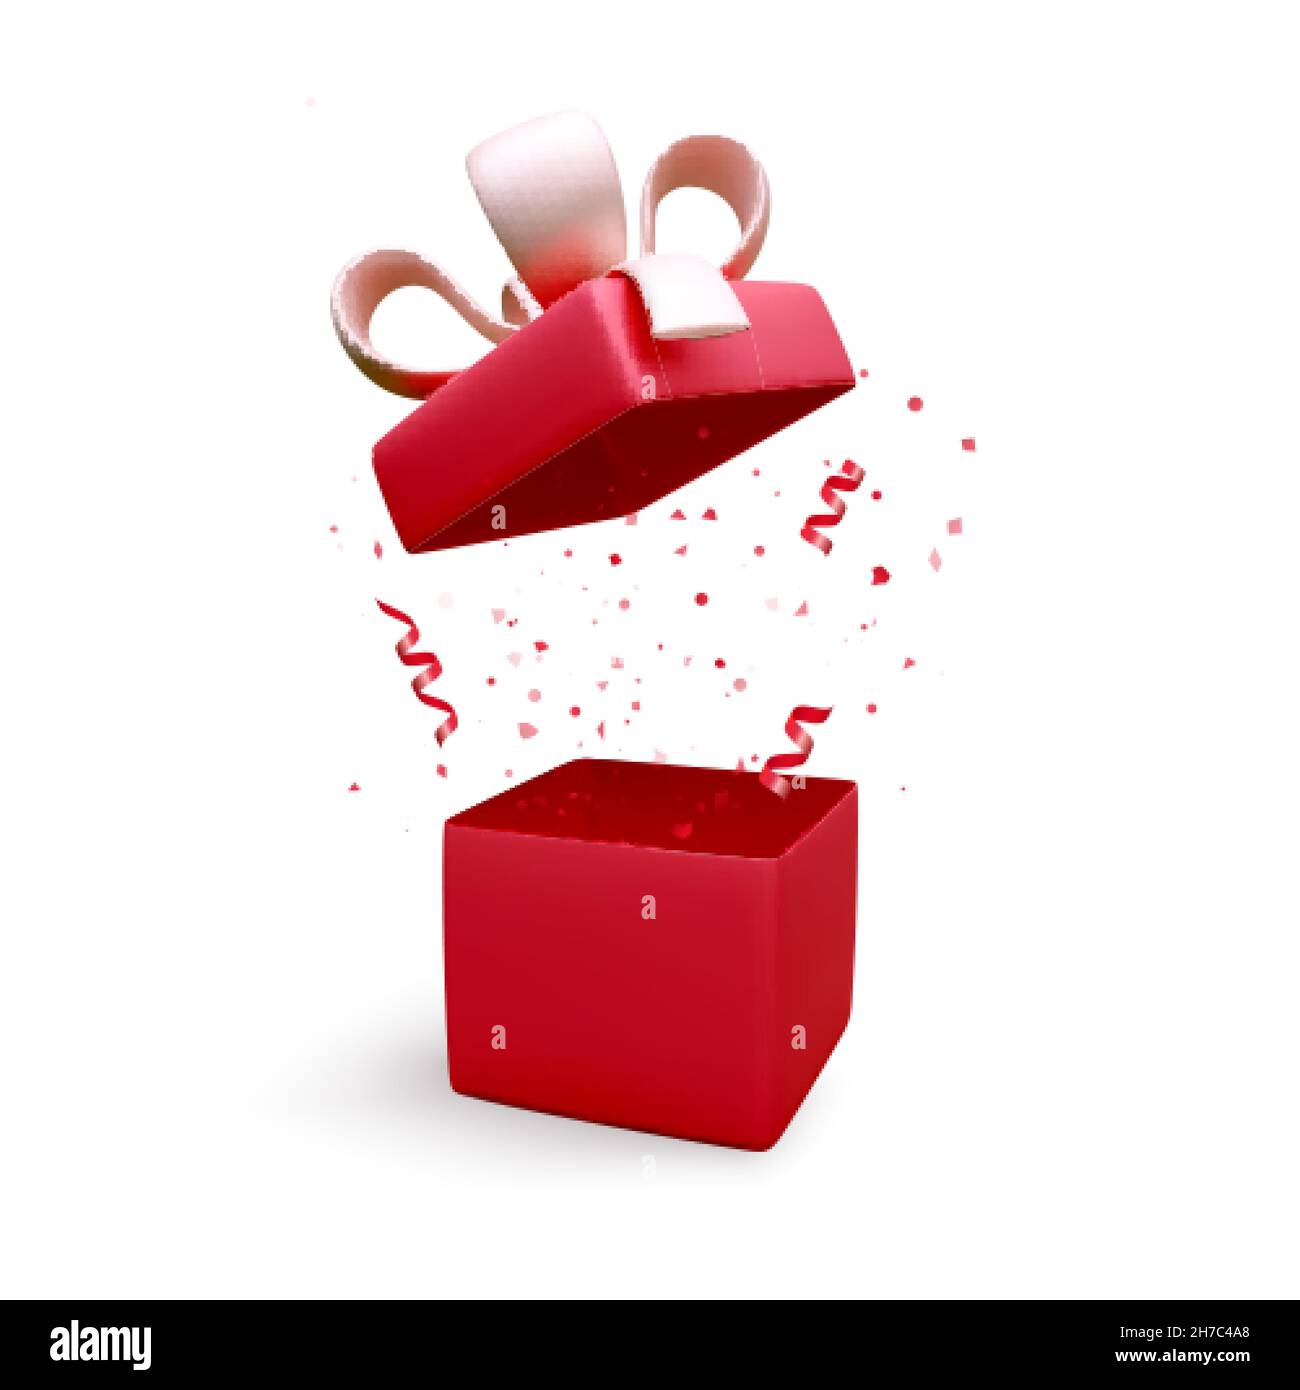 Geschenkbox mit rotem Band und Schleife und herabfallendem Konfetti. Weihnachtsbanner mit offener Box. Geschenk Box Dekoration Design-Element. Vektorgrafik Stock Vektor